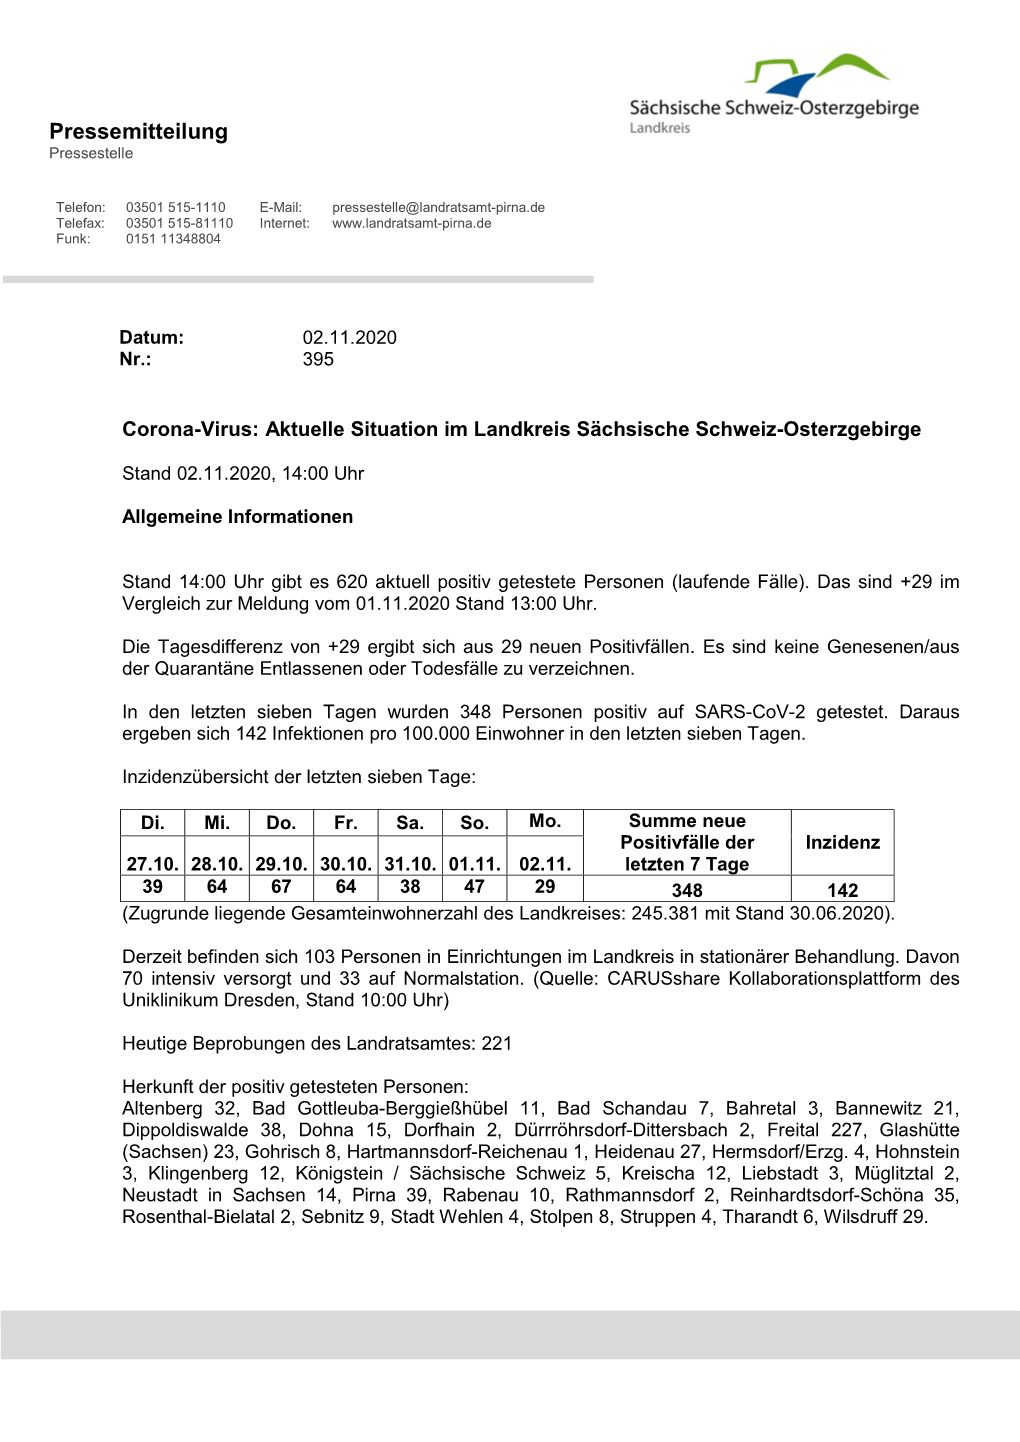 Aktuelle Situation Im Landkreis Sächsische Schweiz-Osterzgebirge